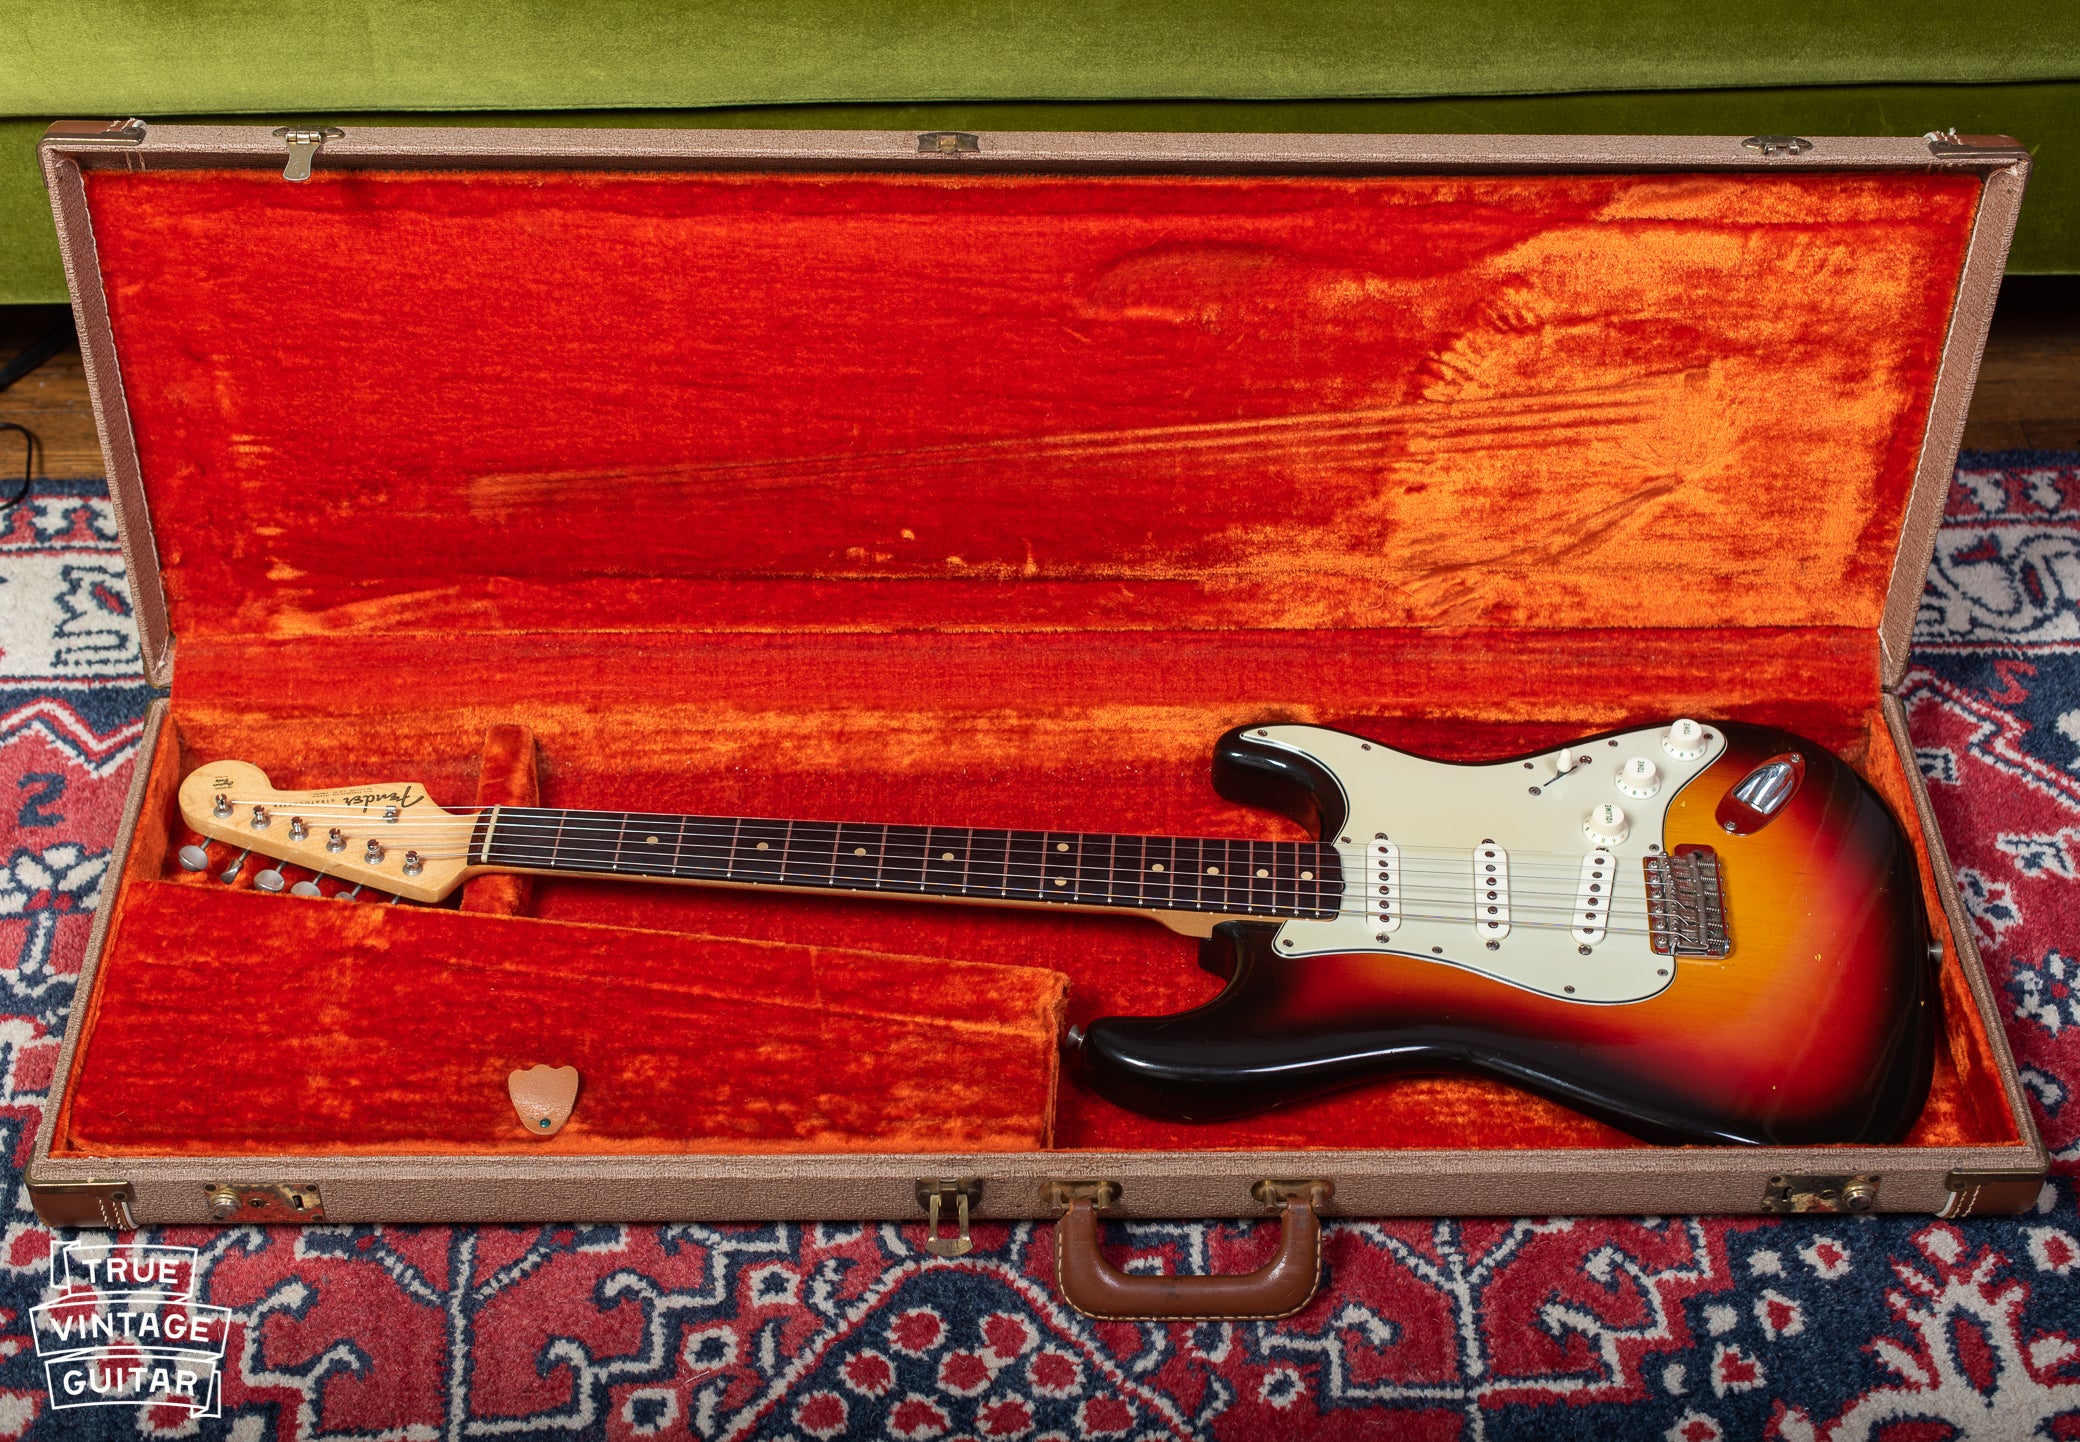 Vintage 1962 Fender Stratocaster guitar